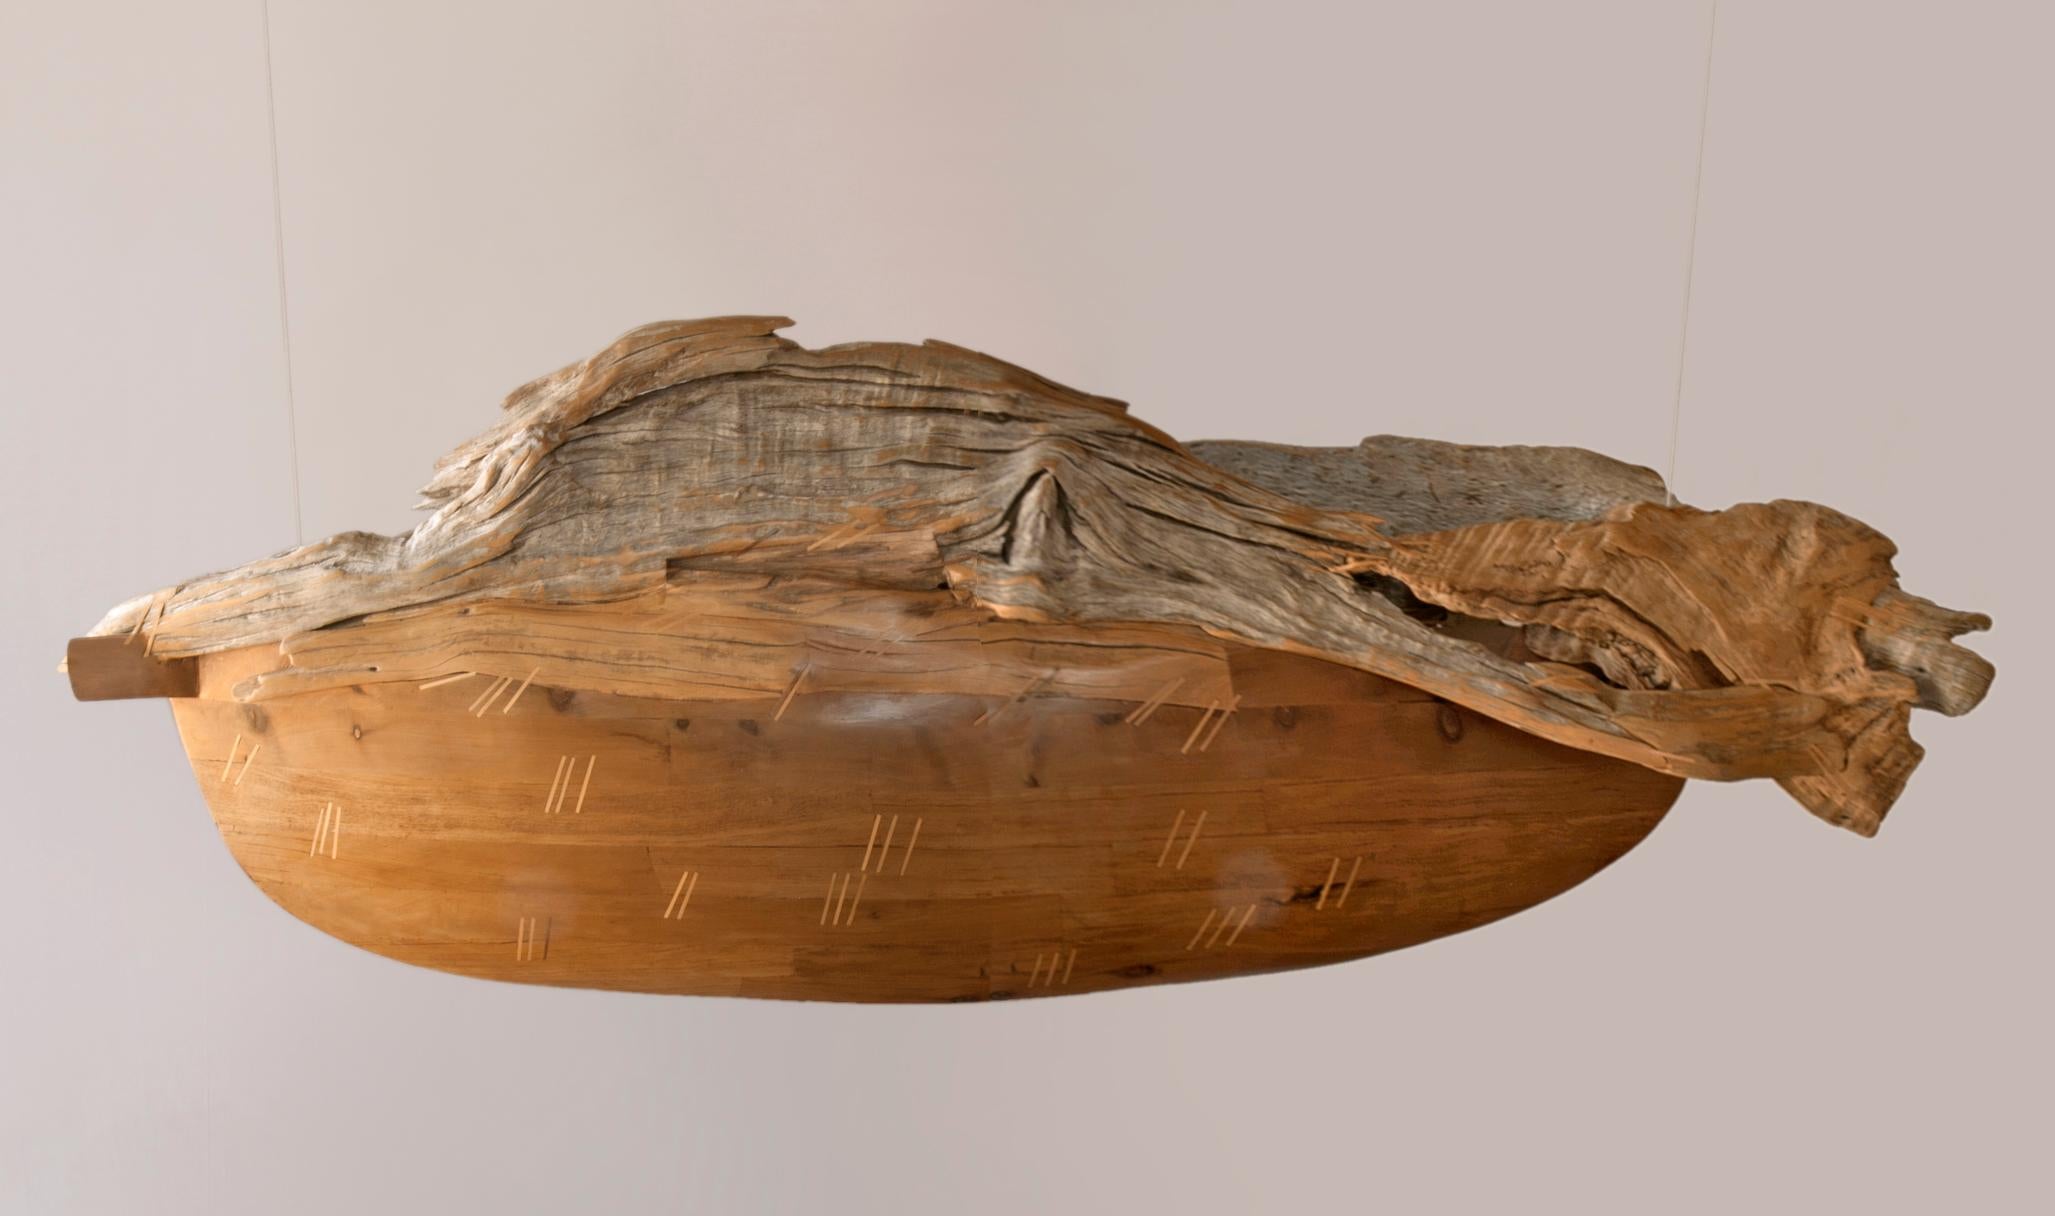 La sculpture "Barca Pez", ou "Bateau-poisson", de l'artiste chilienne Pilar Ovalle est faite de bois flotté ramassé sur les rives d'un lac au Chili, combiné à de l'Alerce, un bois indigène du Chili. Il peut être suspendu comme illustré ou un support